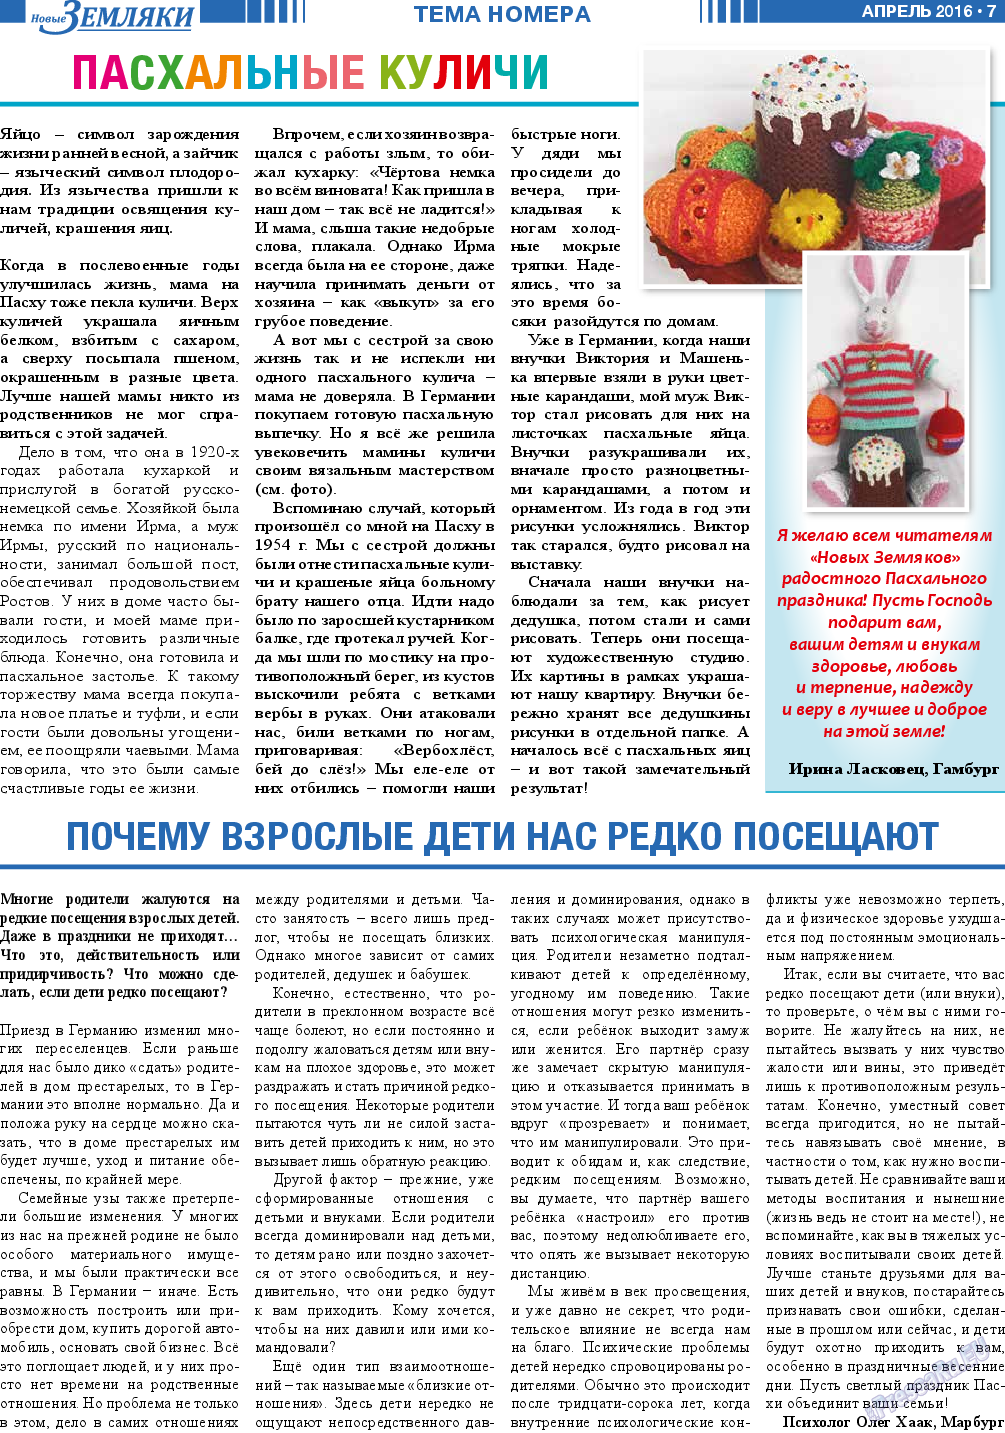 Новые Земляки, газета. 2016 №4 стр.7